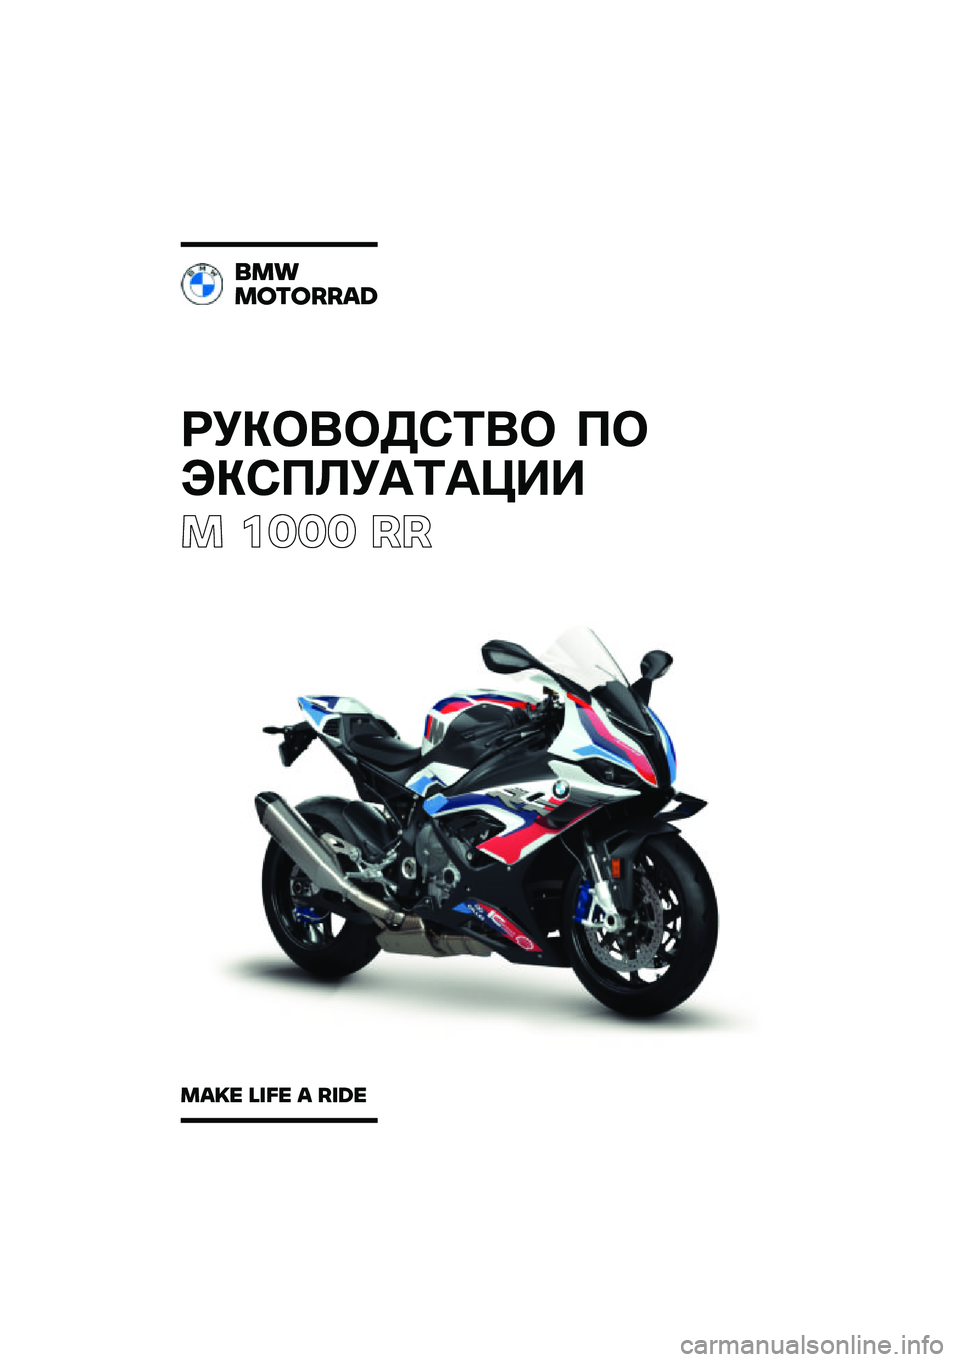 BMW MOTORRAD M 1000 RR 2021  Руководство по эксплуатации (in Russian) ��������\b�	�� �
�
���\b�
�\f��
�	�
���
� ���� ��
���
�������\b�	
��\b�
� �\f�
�� �\b ��
�	� 